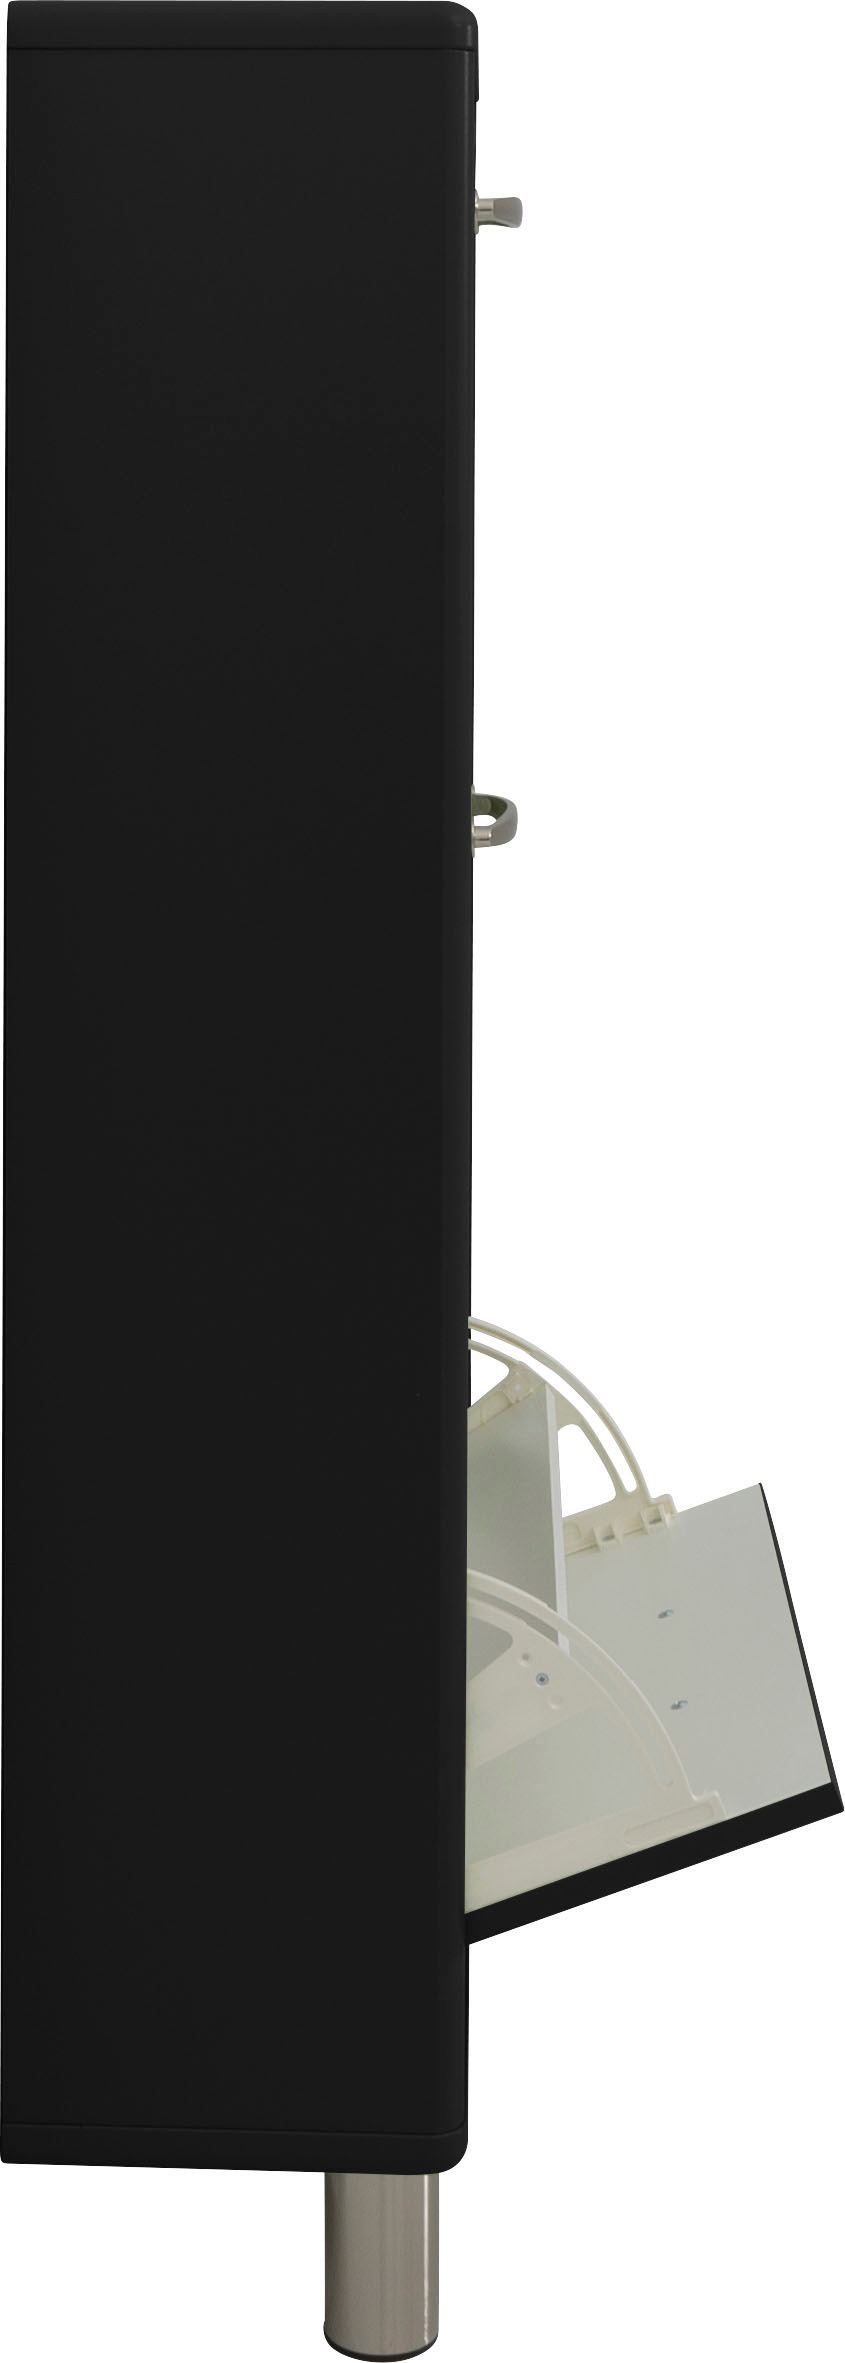 Tenzo Schuhkommode »Malibu«, mit dem Malibu Logo auf der obersten Schubladenfront, Breite 58 cm